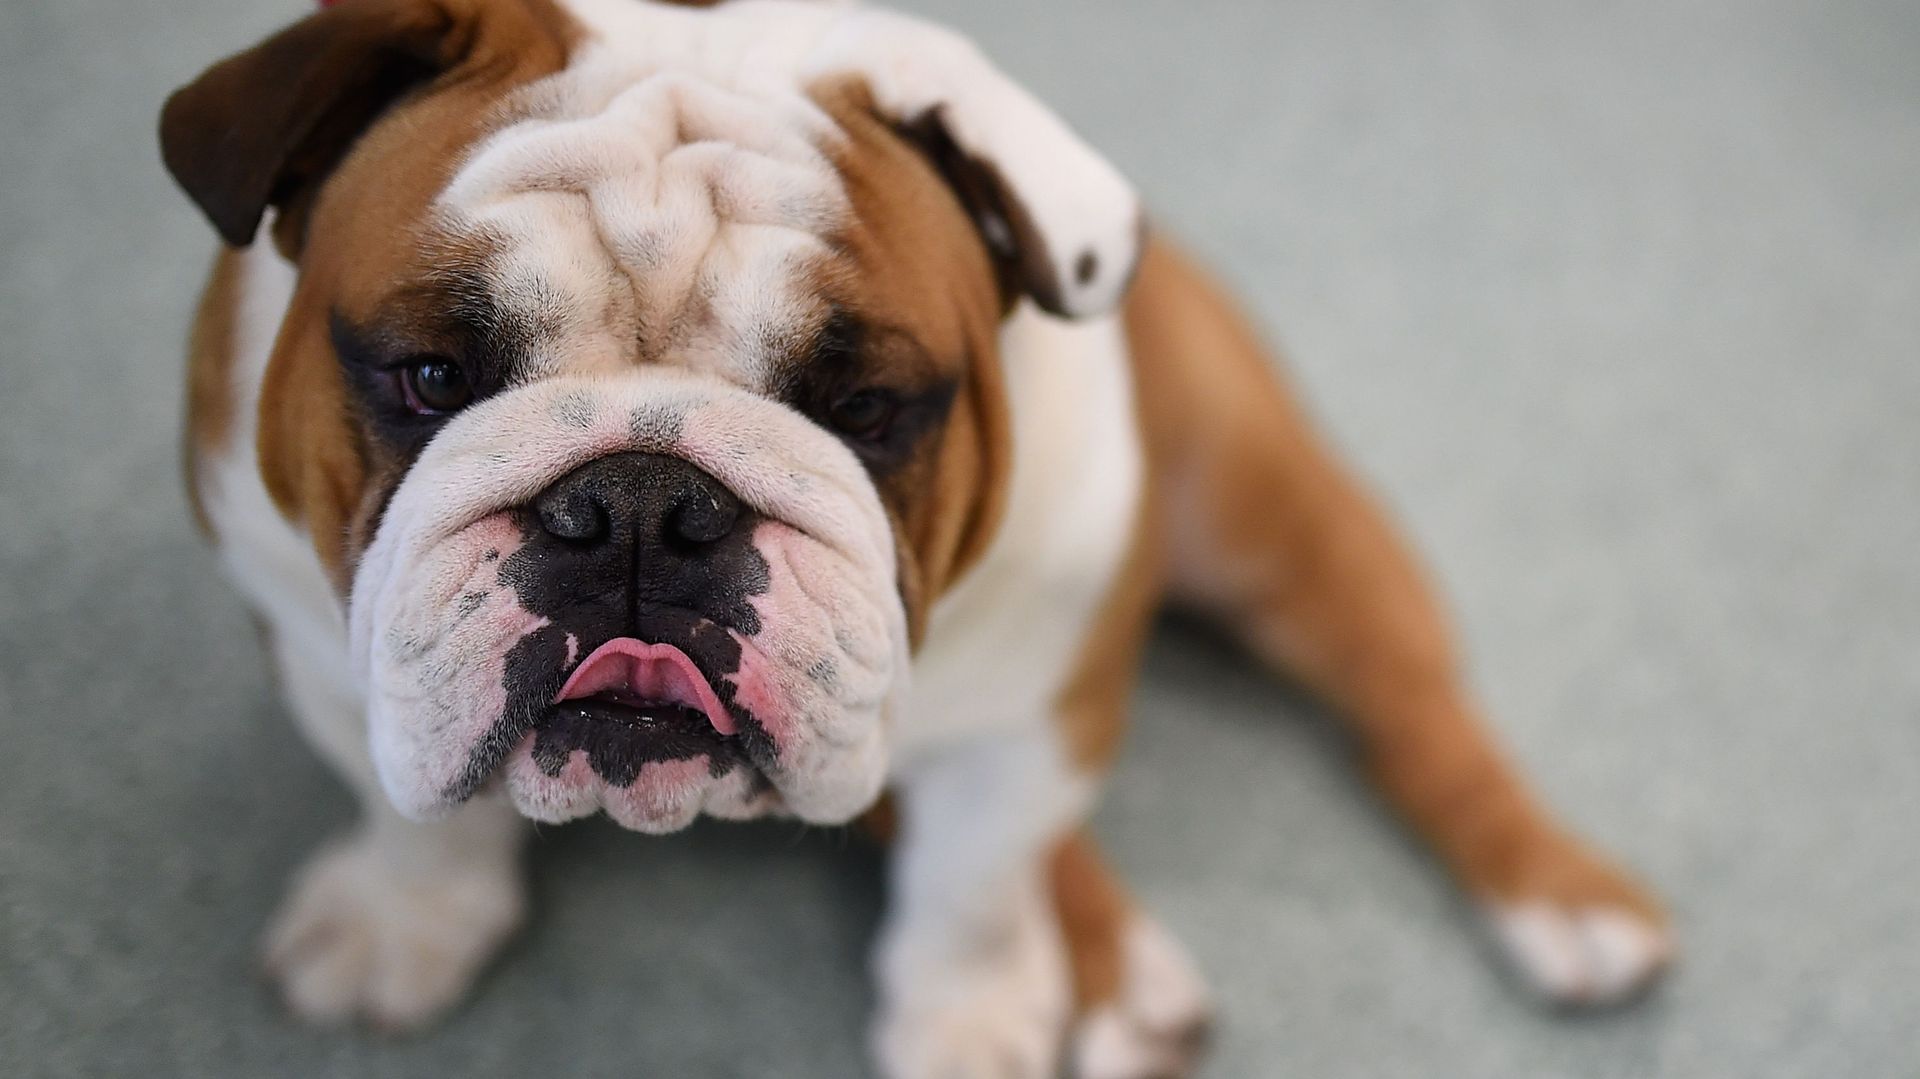 Les bouledogues, ces chiens ultra populaires souffrent plus que vous ne le pensez